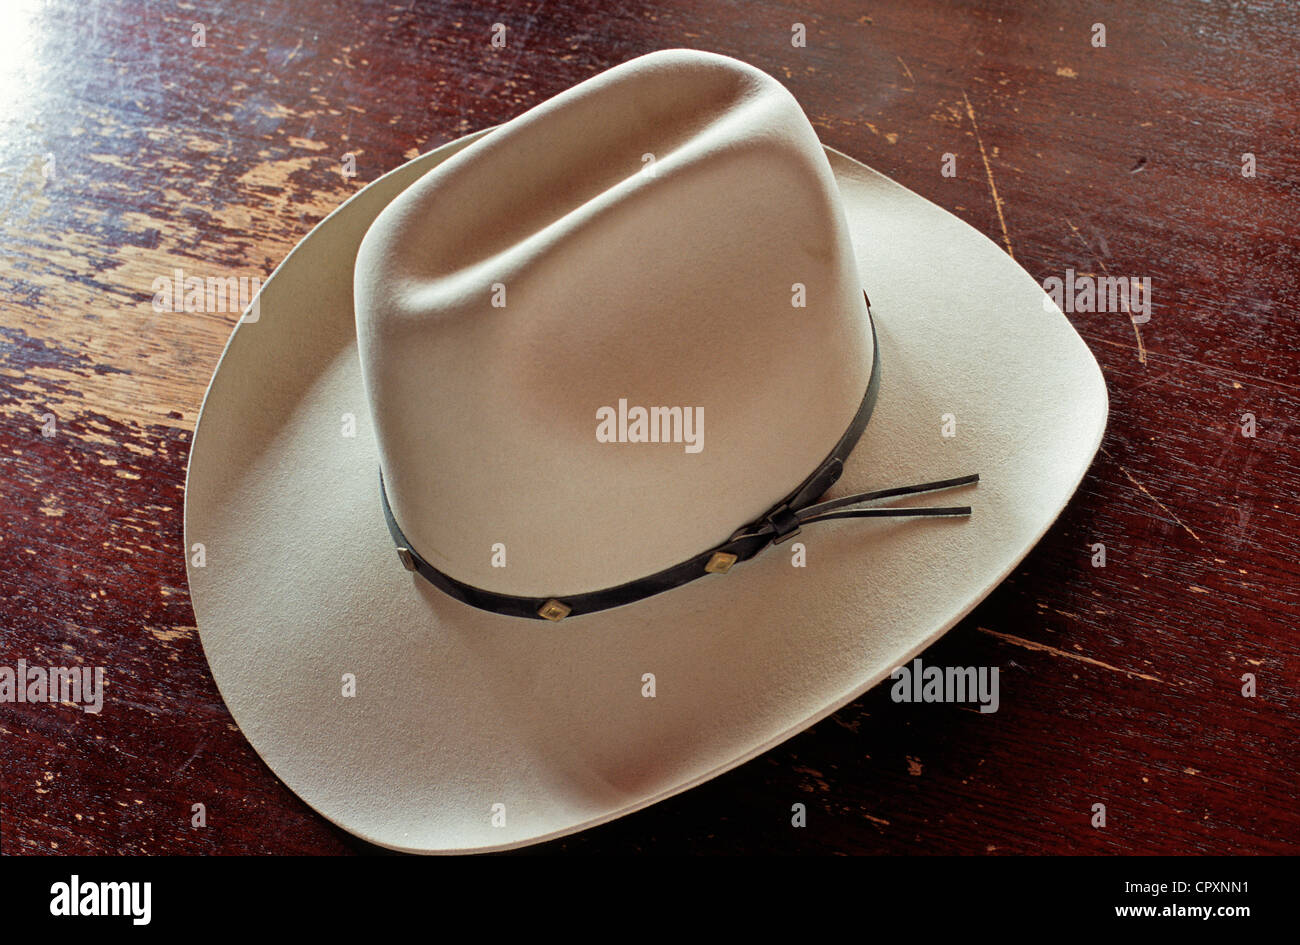 Cappello texano immagini e fotografie stock ad alta risoluzione - Alamy